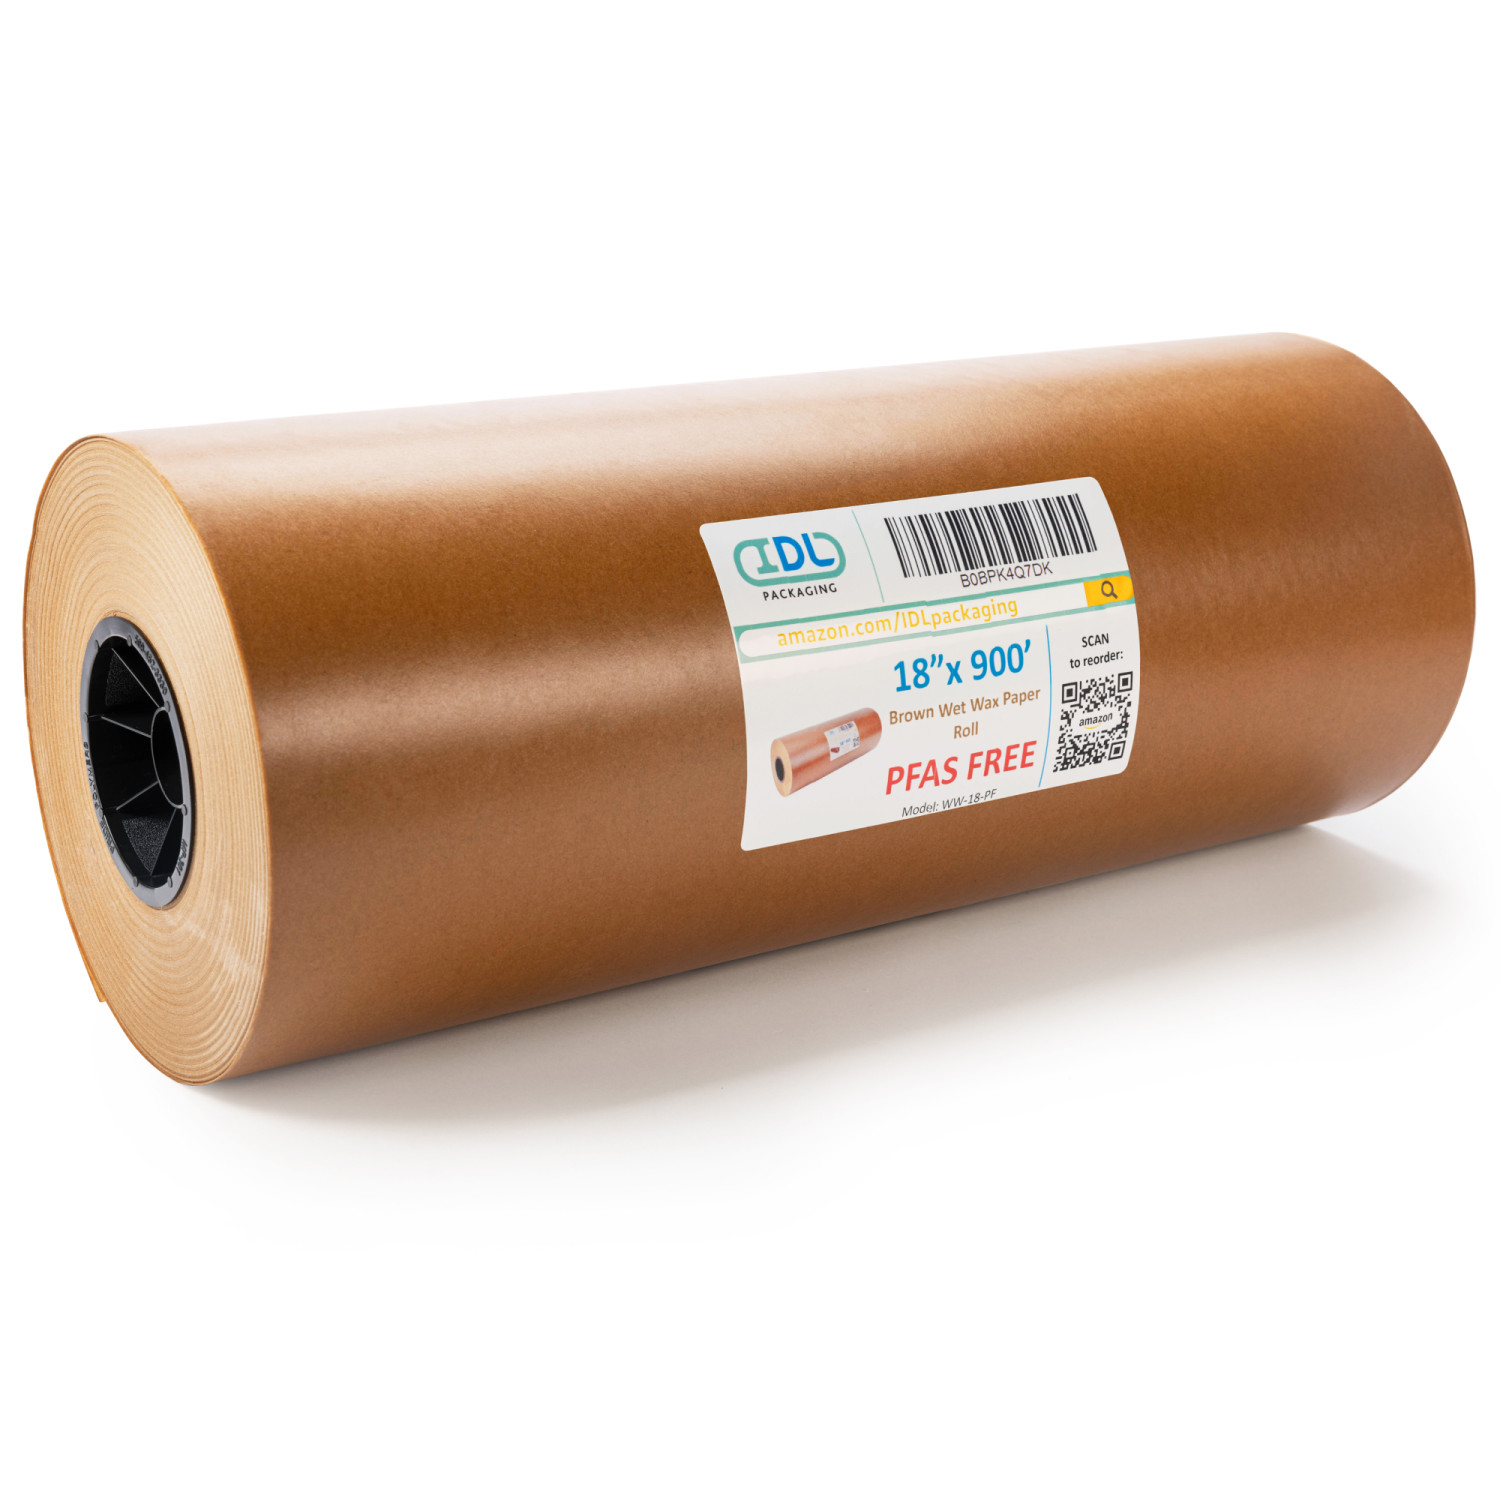 18 x 900' PFAS Free Wet Wax Paper Roll, Food-Safe Wax Water